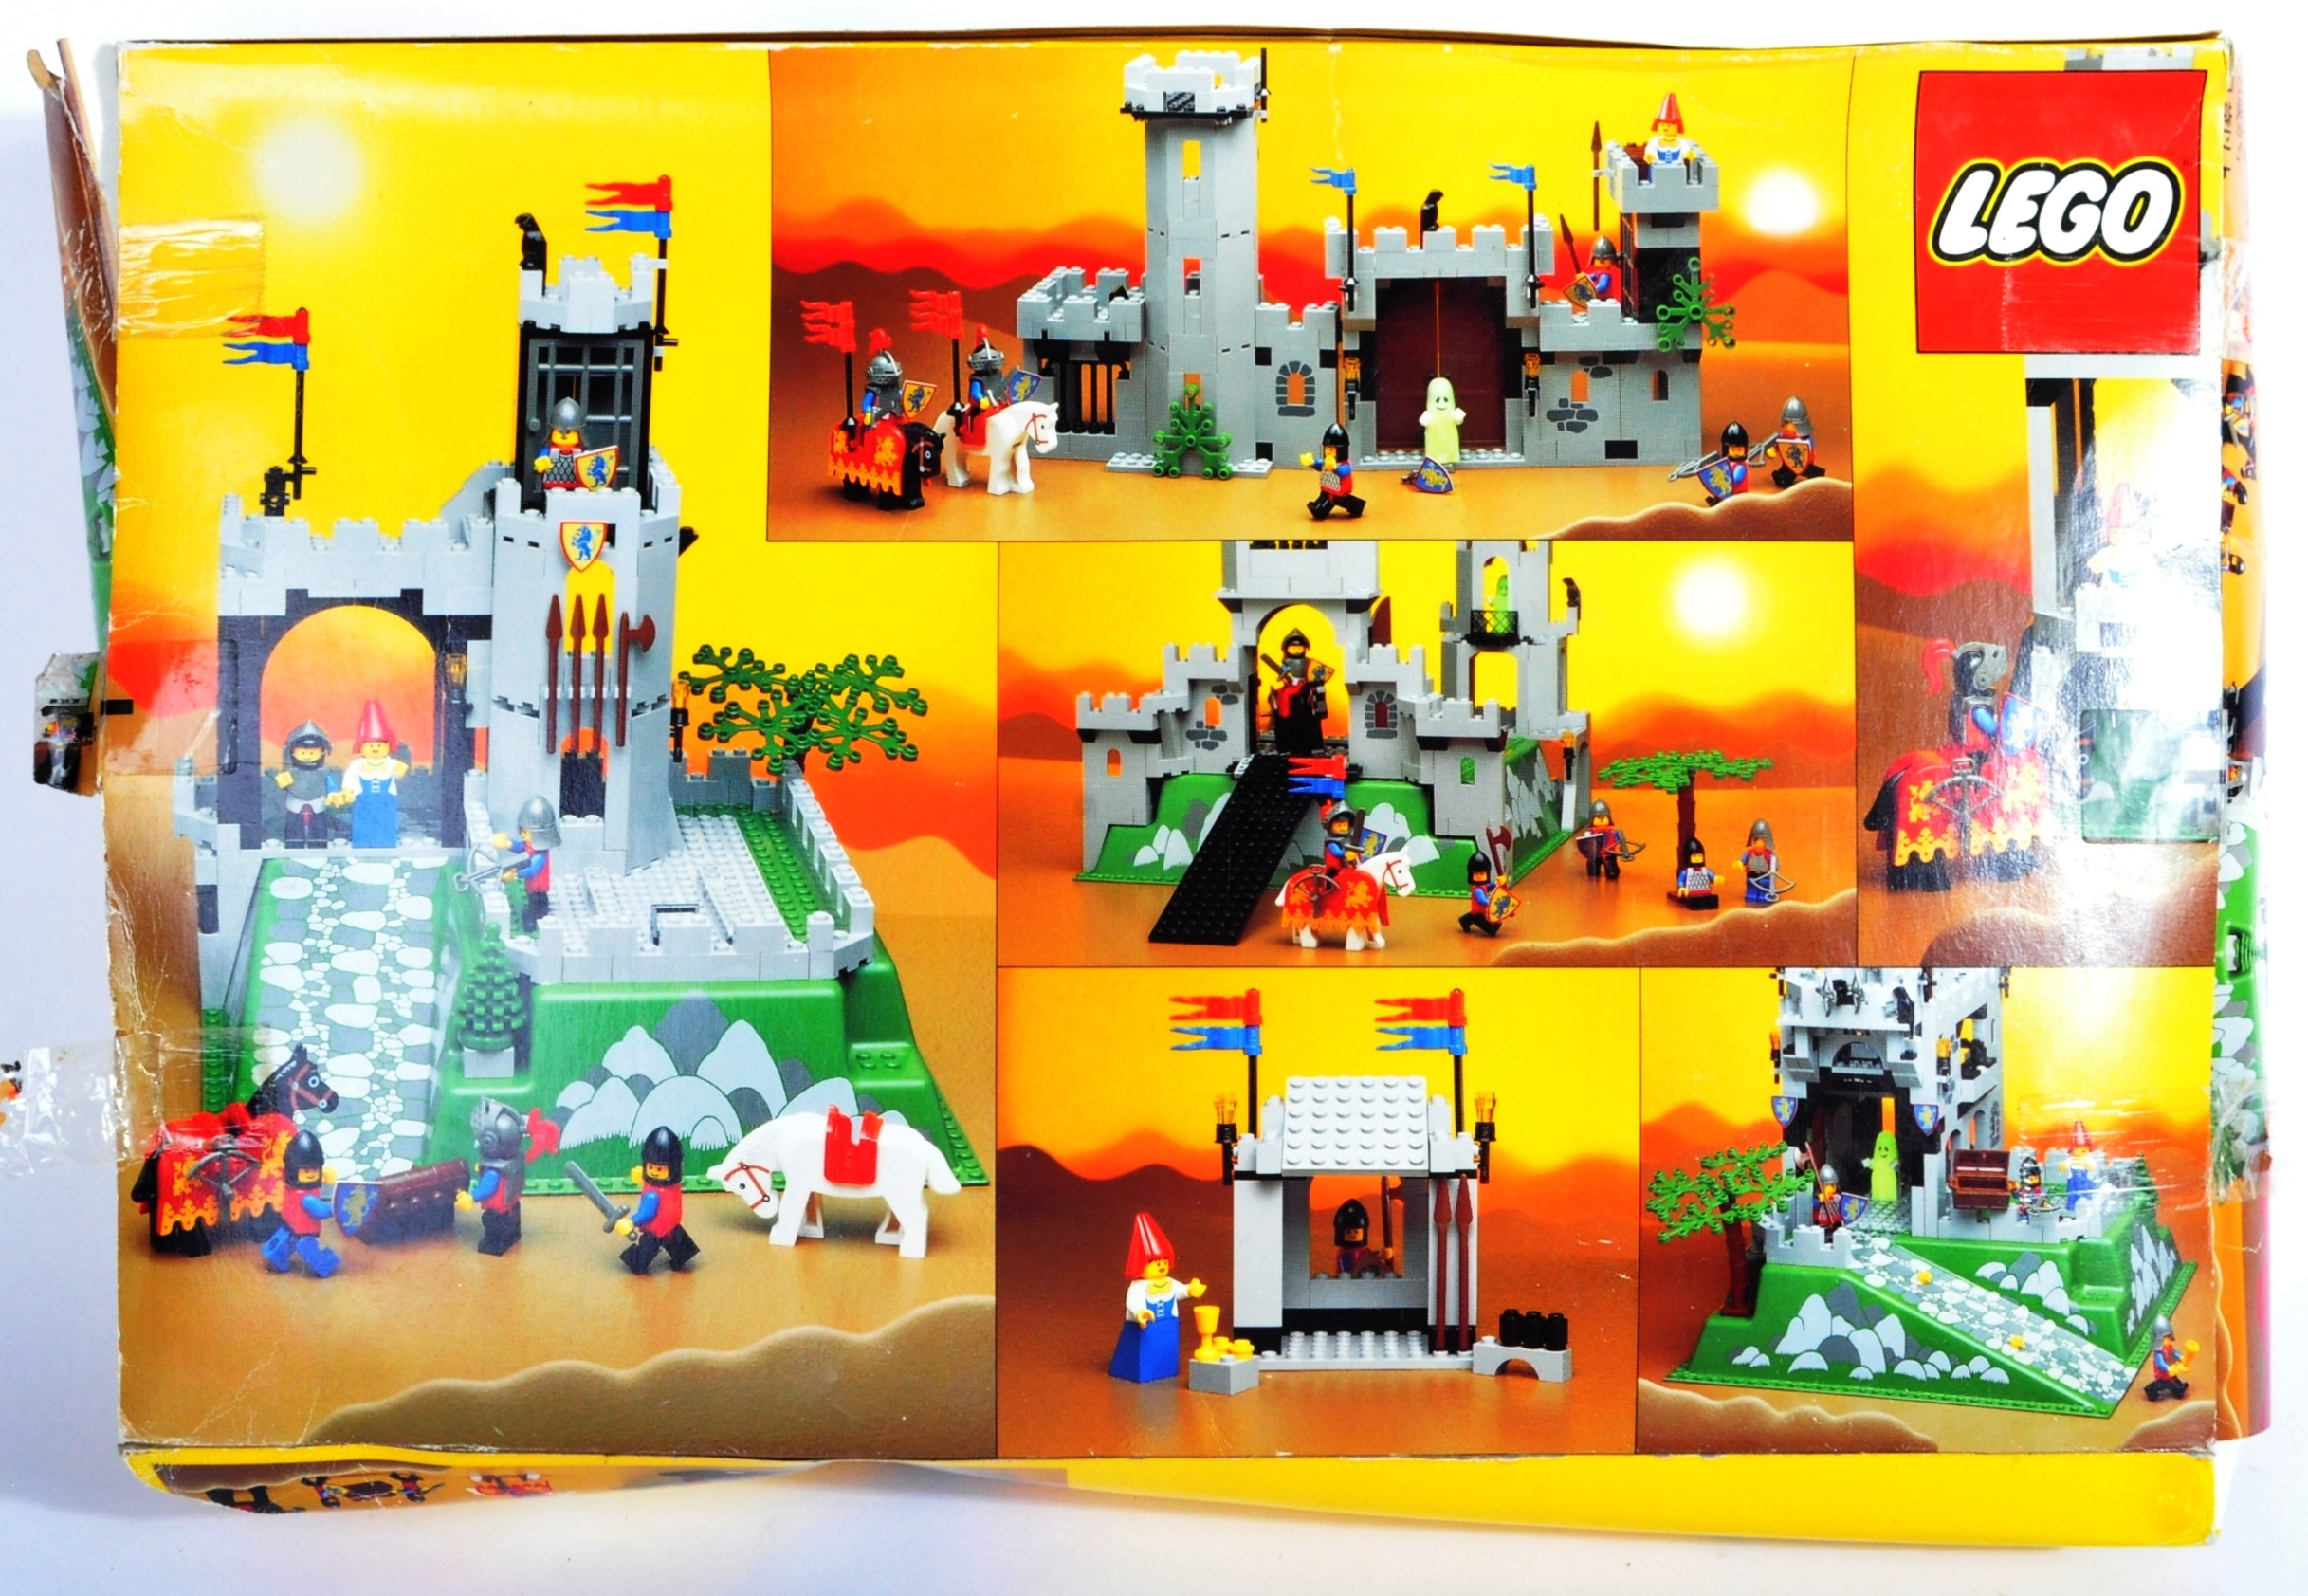 LEGO SET - LEGO LAND - 6081 - KING'S MOUNTAIN FORTRESS - Image 2 of 5